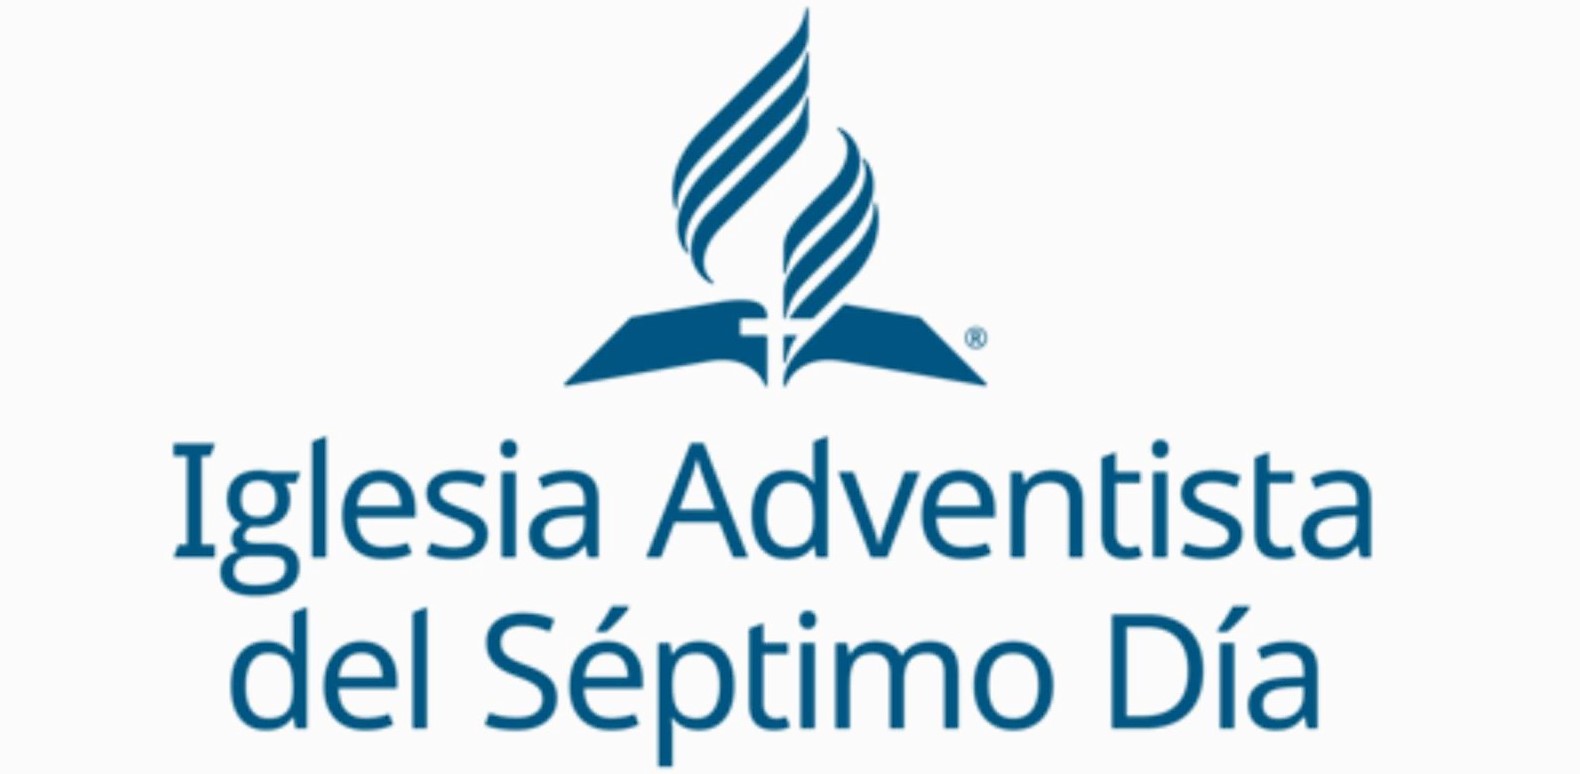 El adventismo del séptimo día: Origen y desarrollo histórico